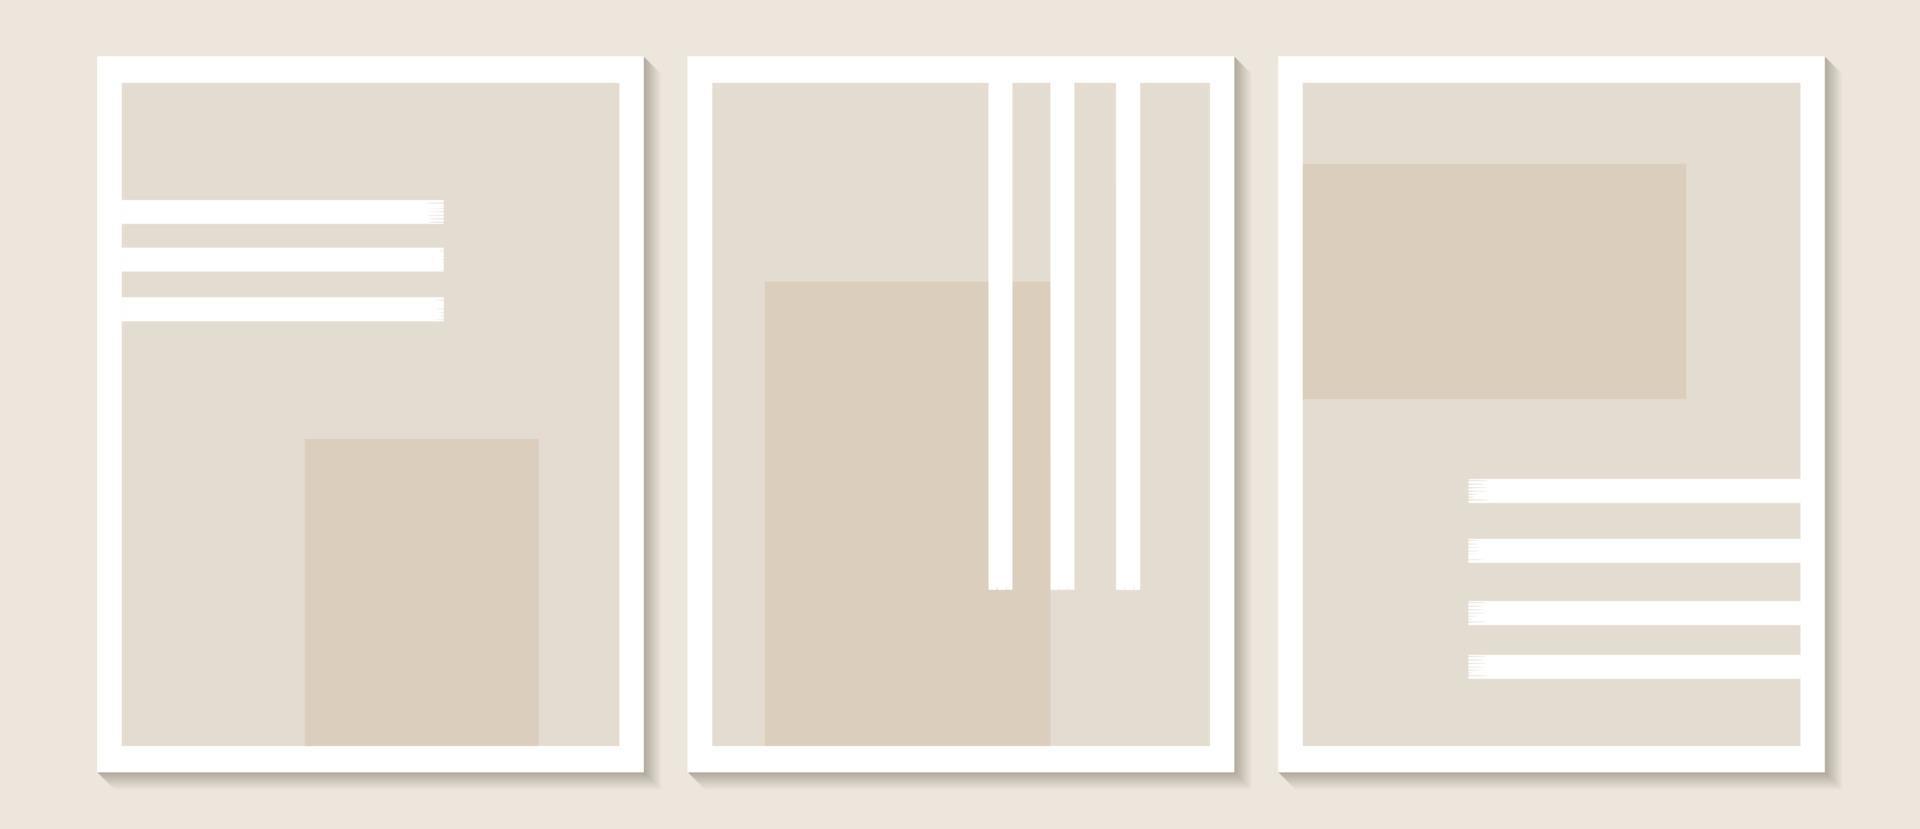 trendig modern abstrakt väggkonst, uppsättning av 3 boho -konsttryck, minimala svarta former på beige. kreativ geometrisk minimalistisk konstnärlig handmålad komposition från mitten av århundradet. vektor